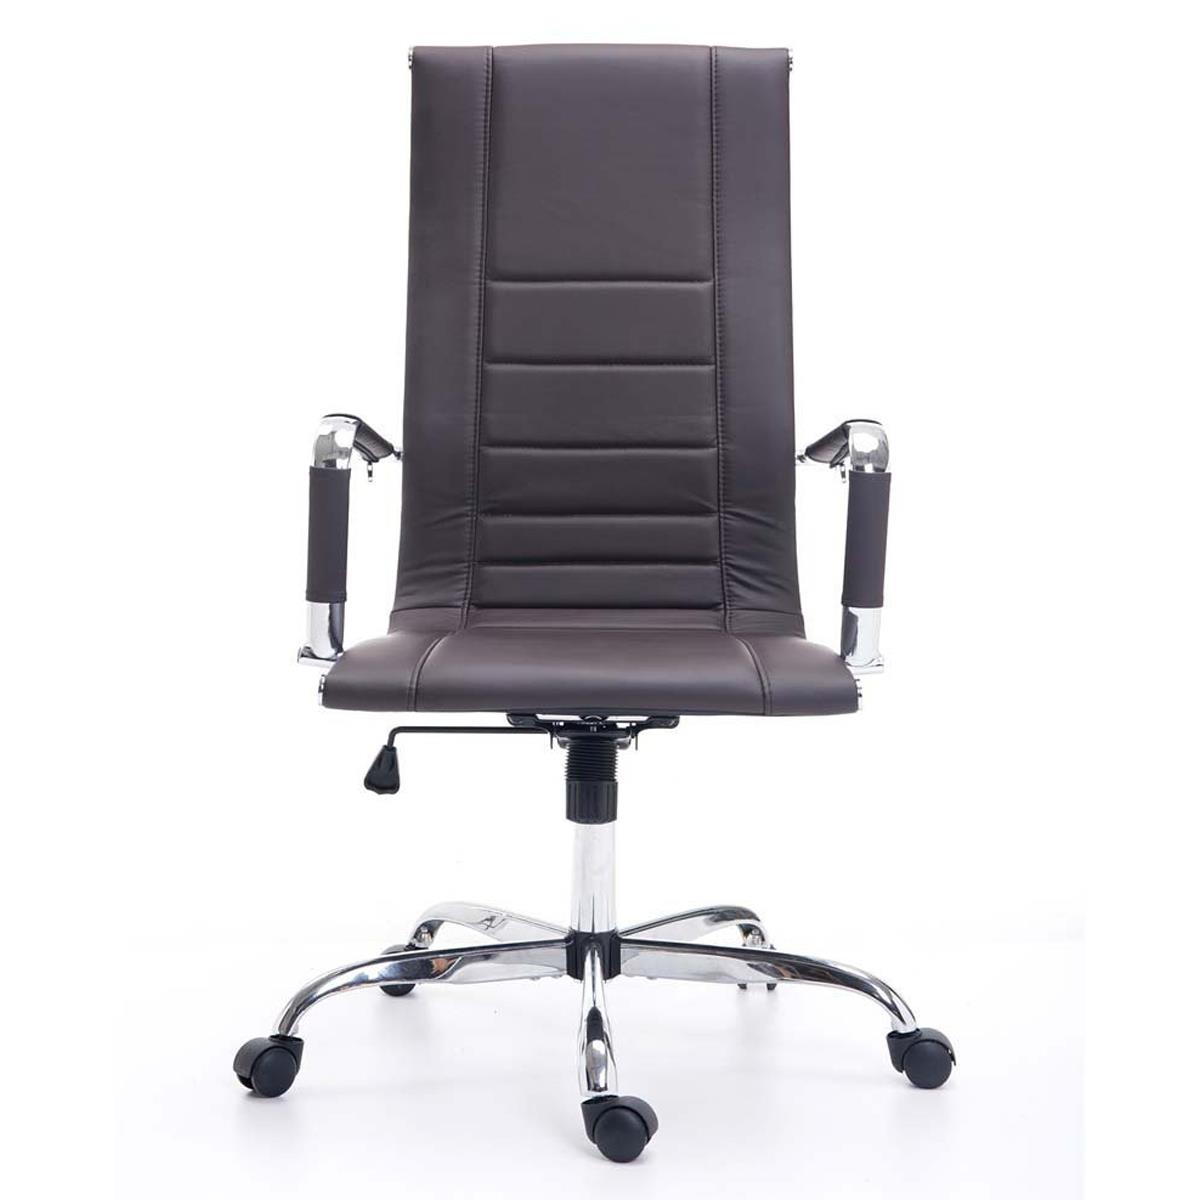 Sedia per ufficio kola struttura in metallo cromato for Design sedia ufficio